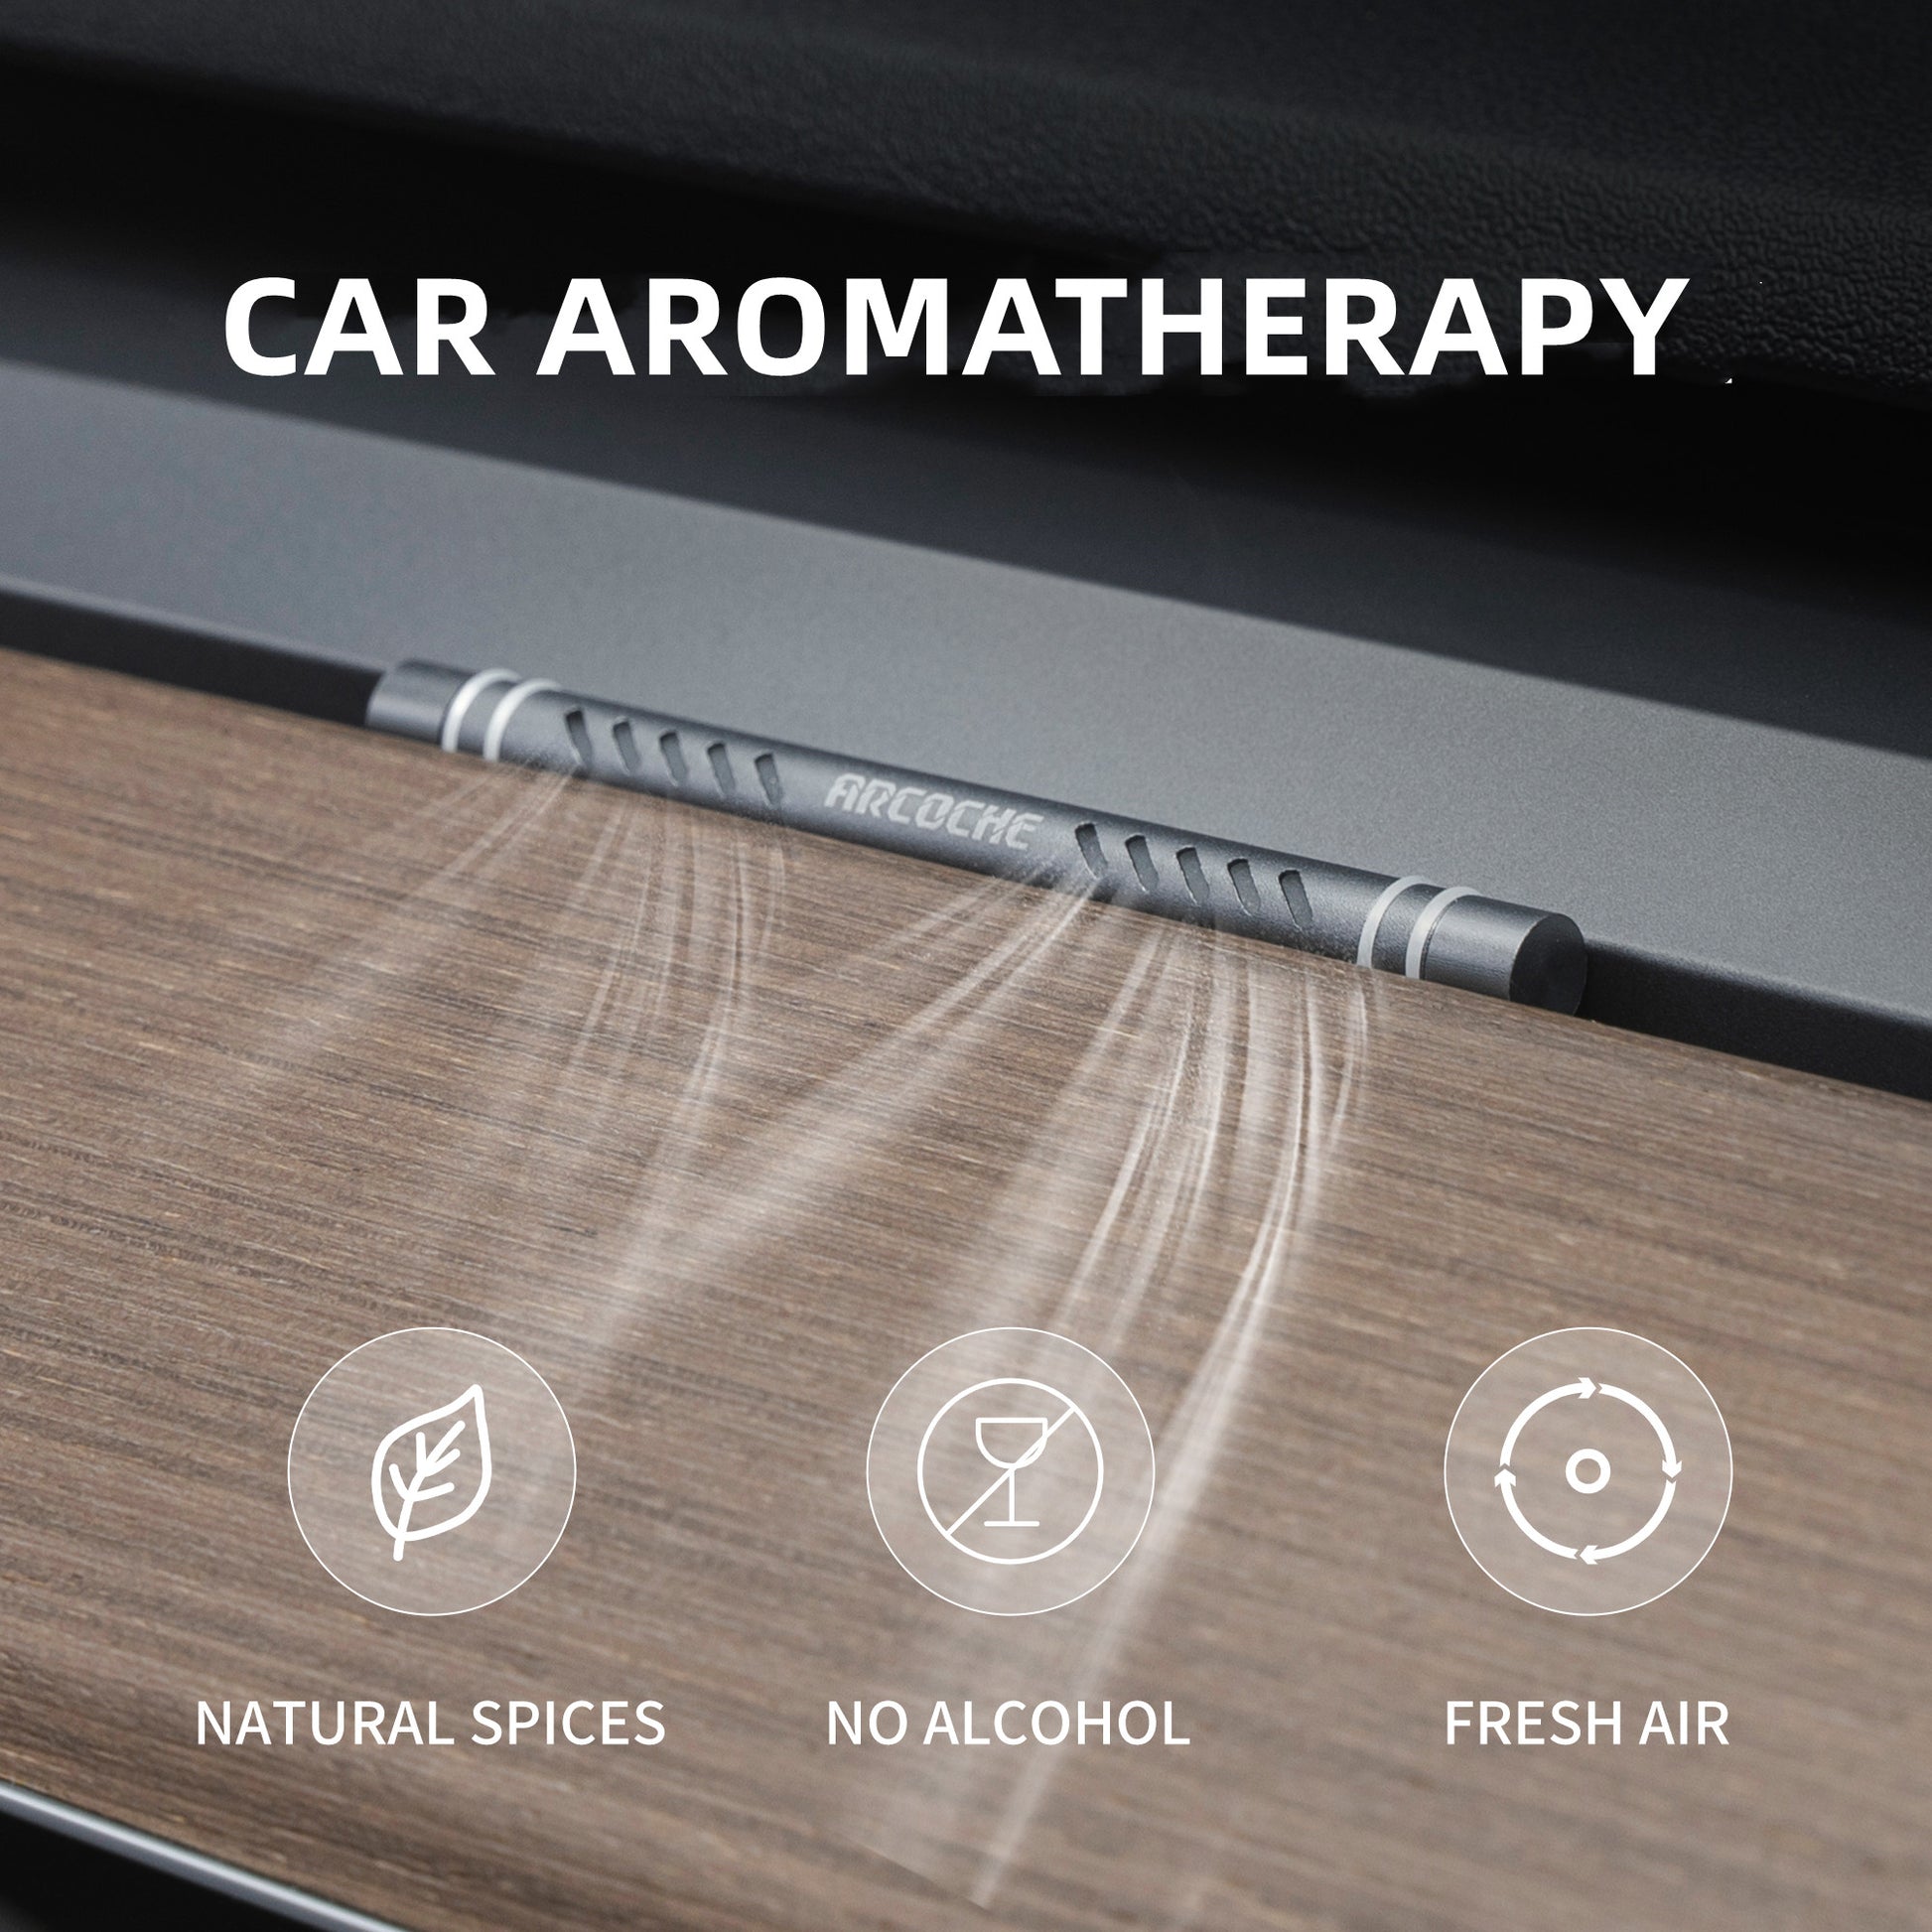 Car Air Freshener Car Aromatherapy For Tesla Model Y 3 Car Dashboard  Perfume Fragrance Car Air Freshener Car Interior Accessories Ornament X0720  From Glasgow, $13.43